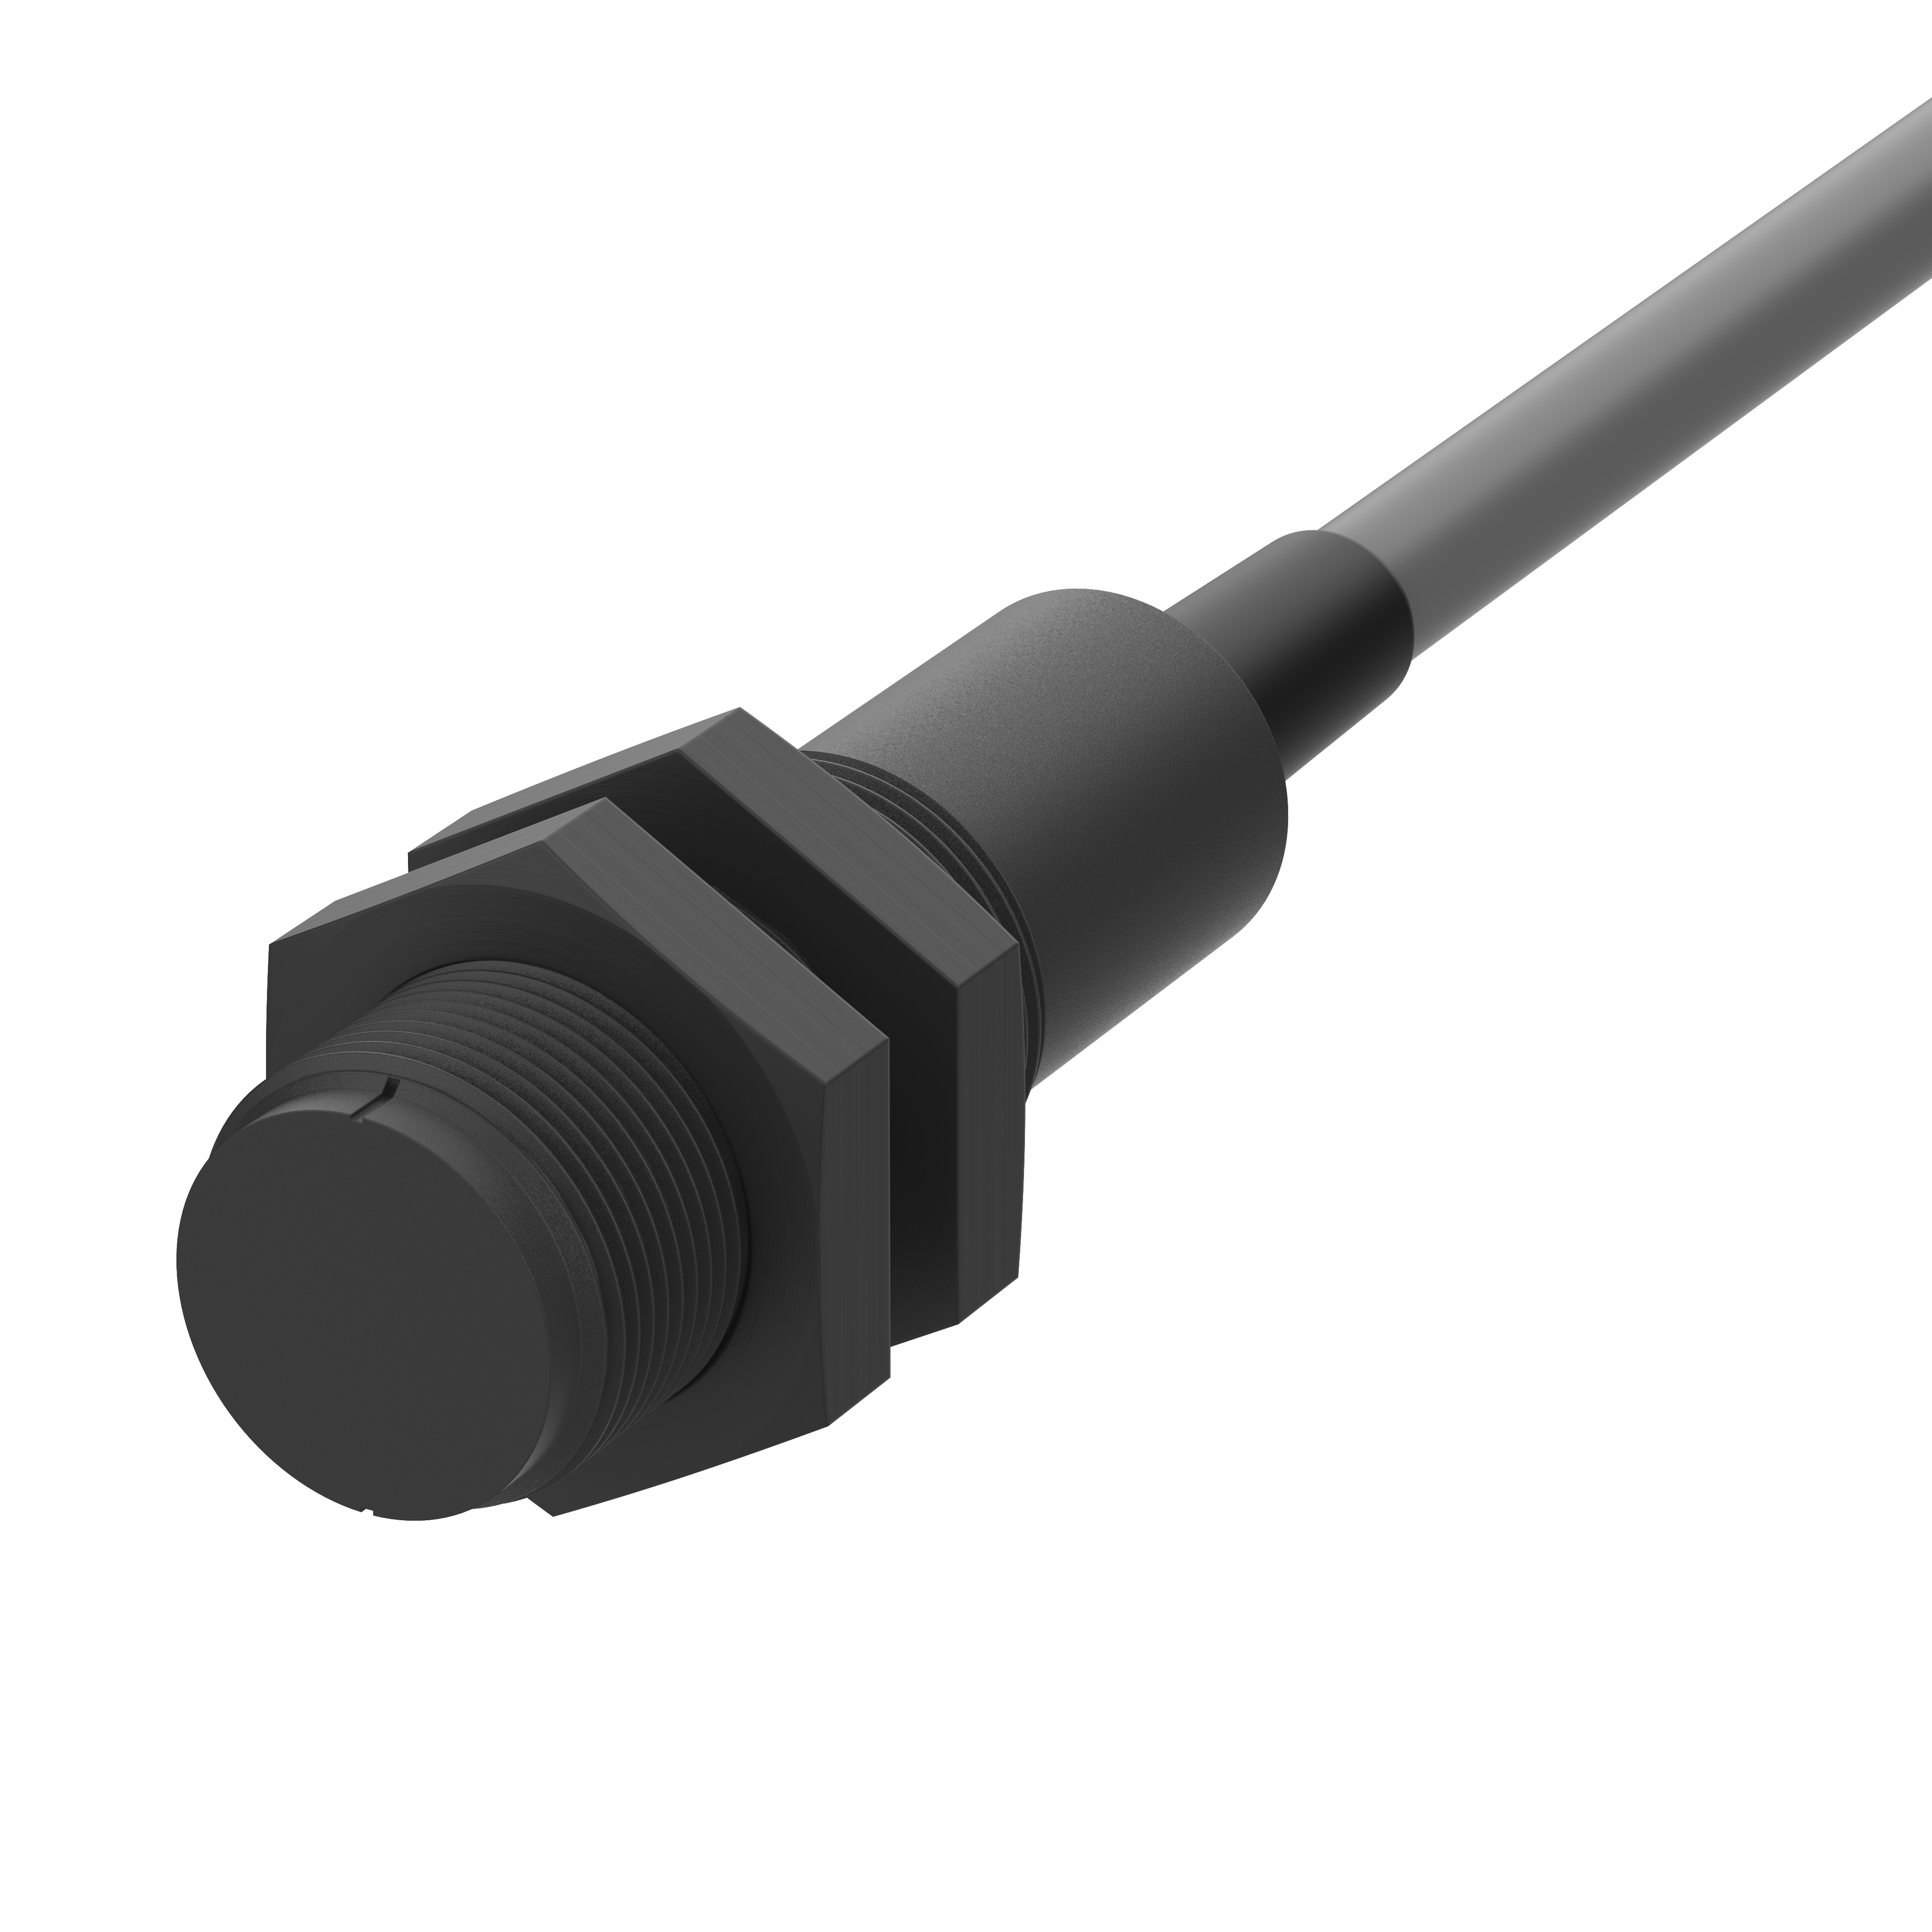 Näherungsschalter - Magnetsensor - 120230-5 - Wechsler, 5m PVC Kabel